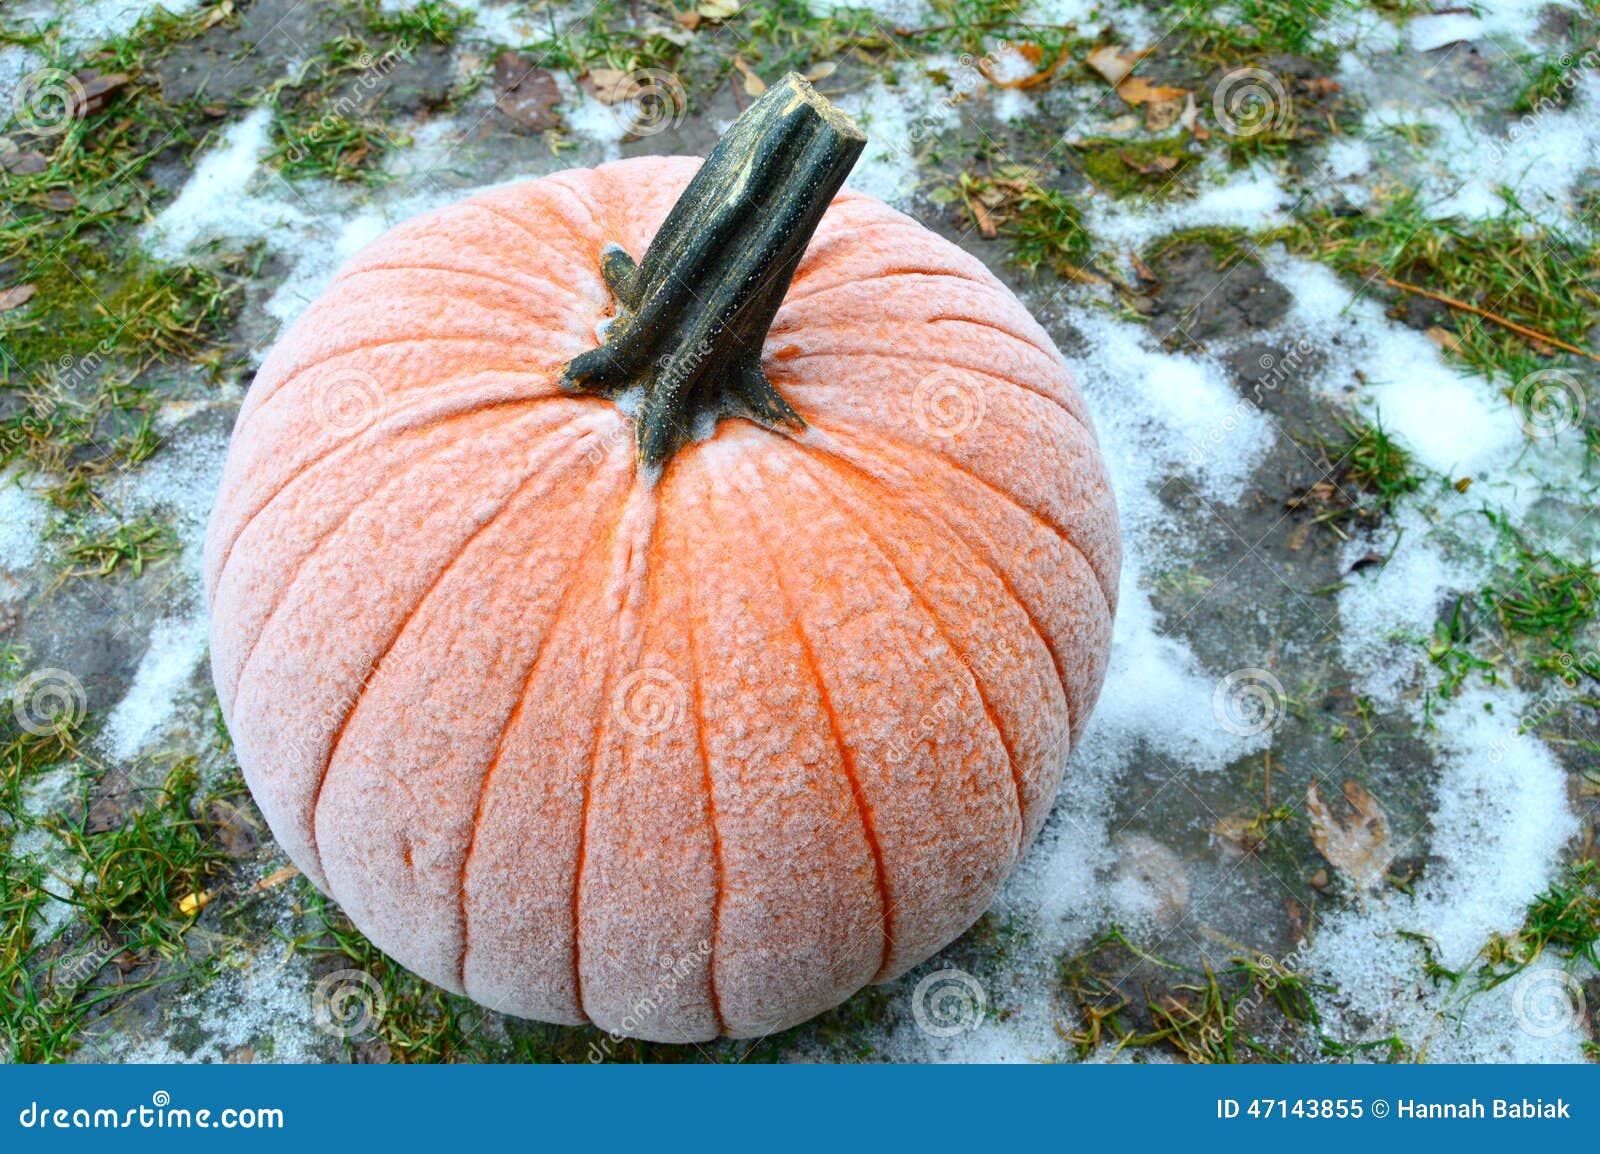 frost on pumpkin